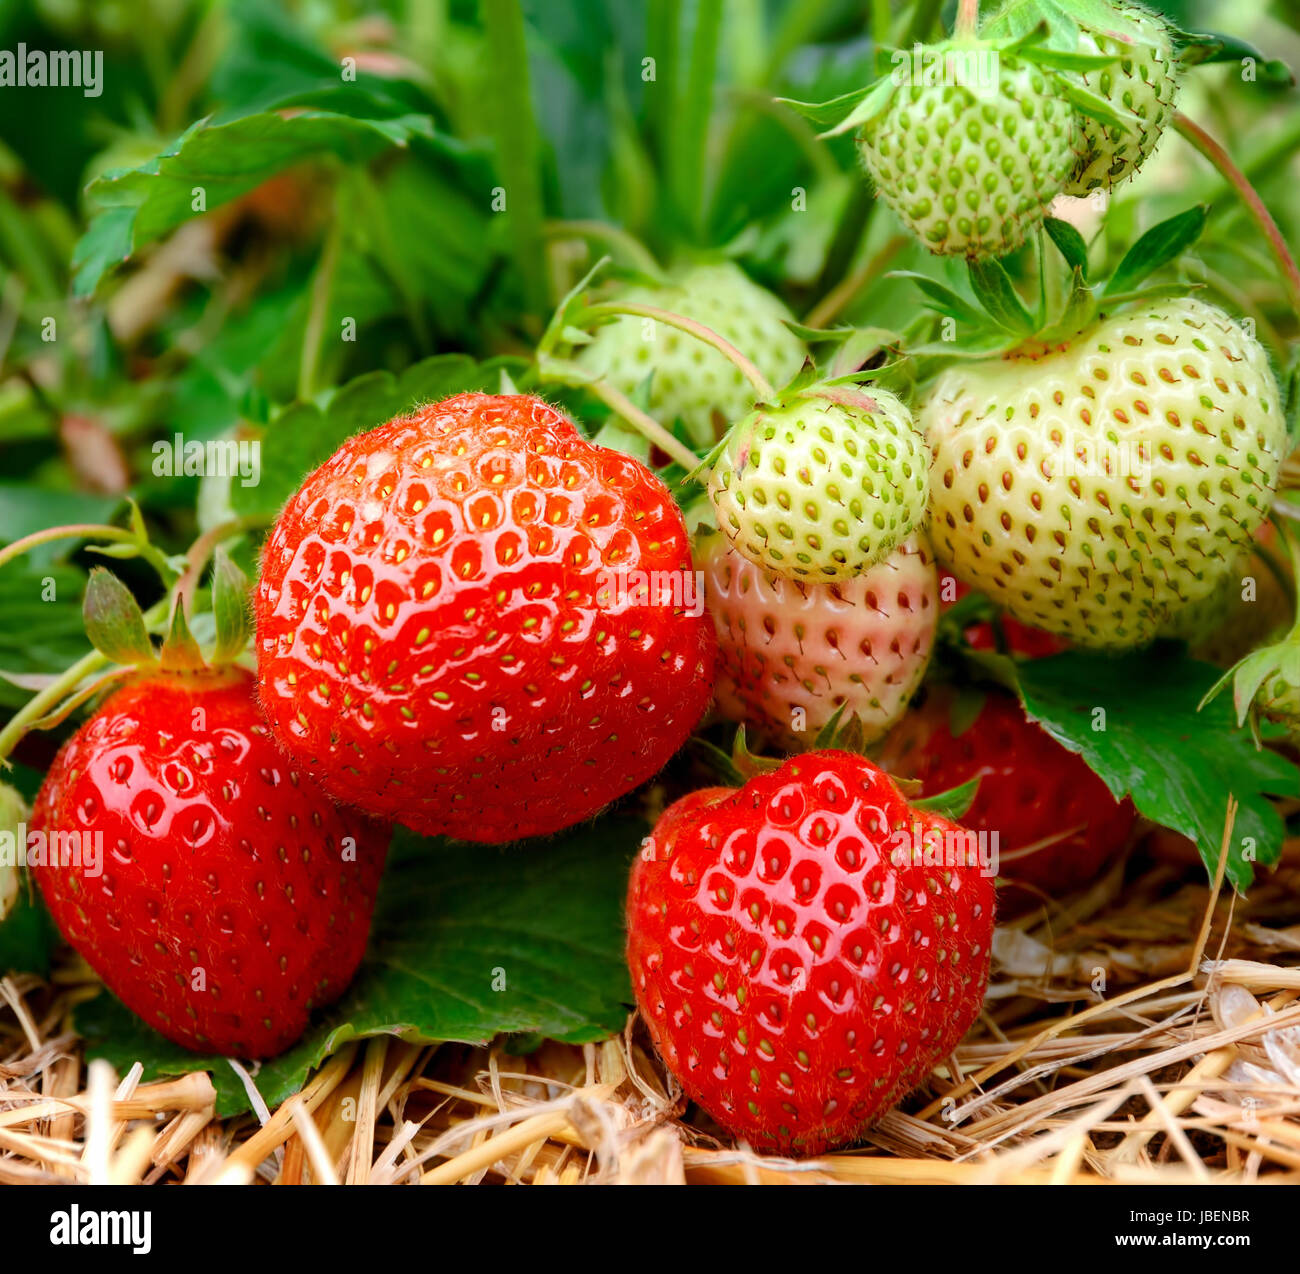 Reife und unreife Erdbeeren am Strauch Stock Photo